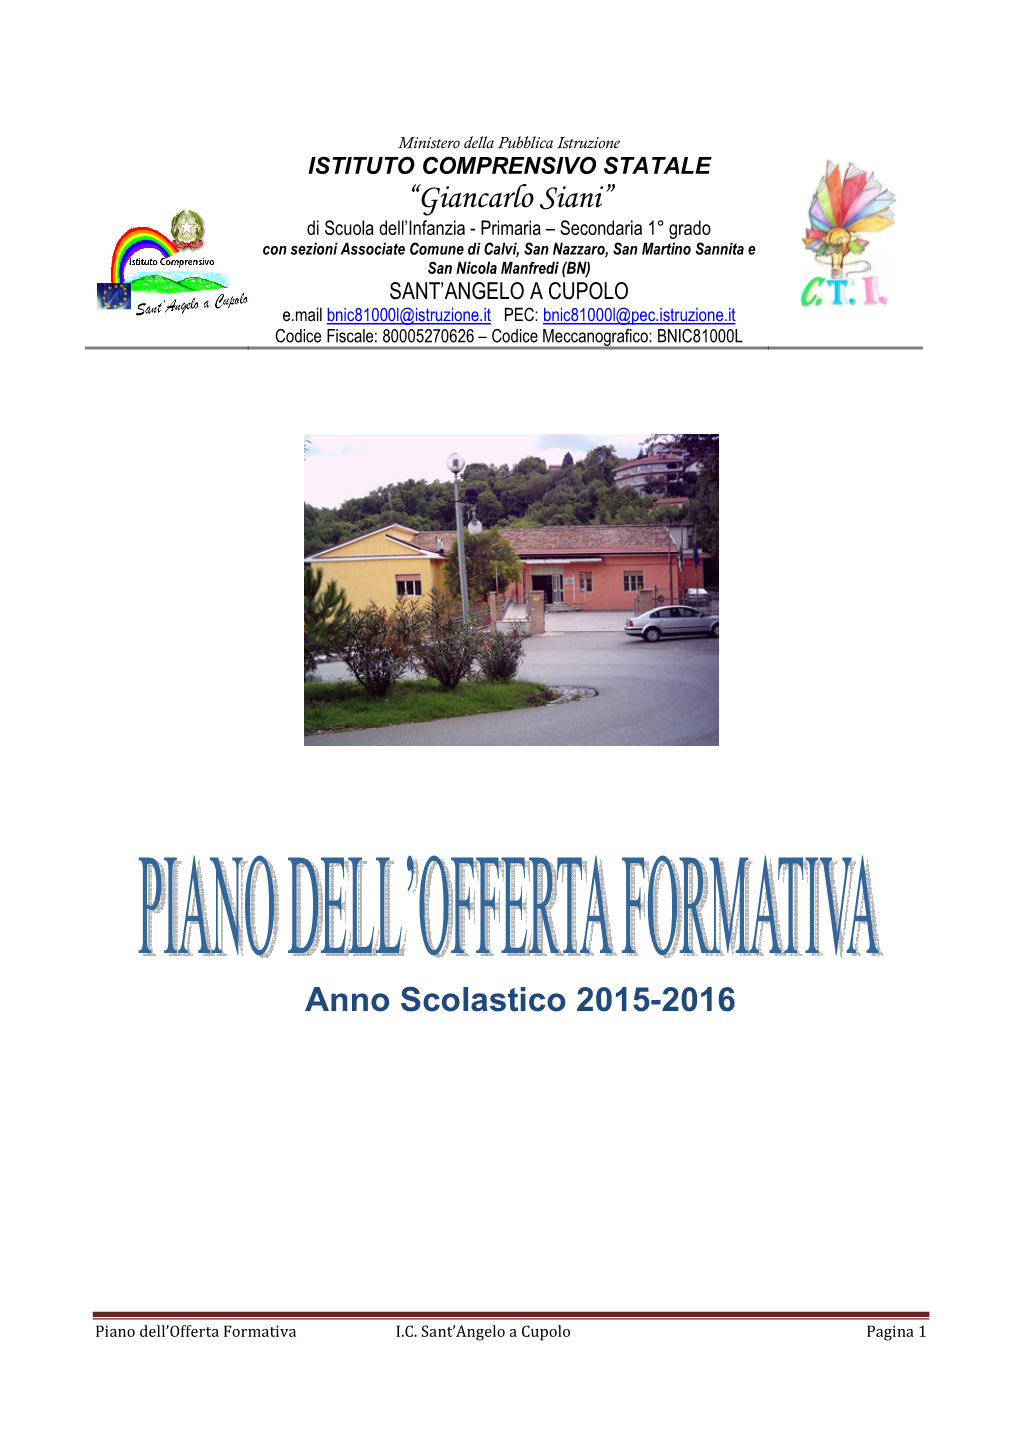 Anno Scolastico 2015-2016